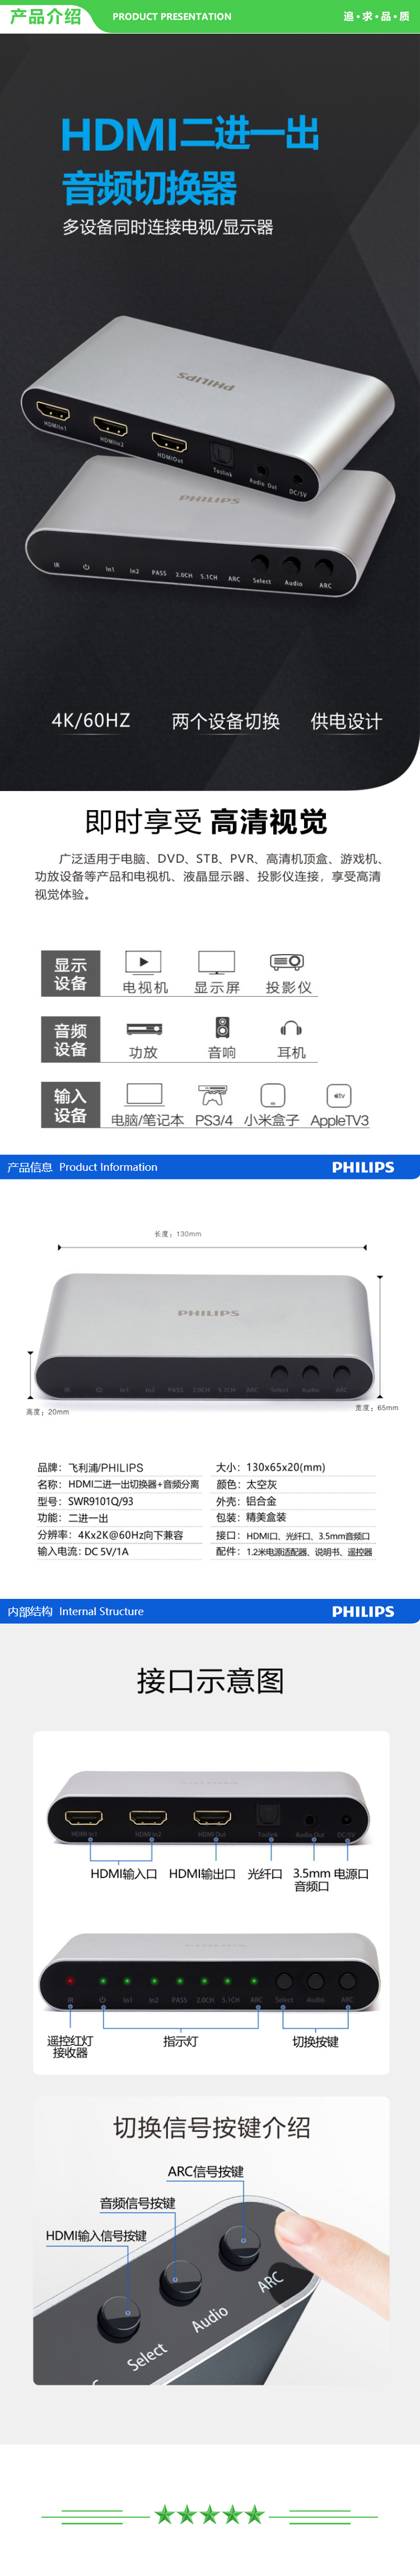 飞利浦 PHILIPS SWR9101Q 93 HDMI二进一出切换器2.0版支持音频分离4K@60Hz高清分辨率 支持Toslink数字音频5.1及3.5模拟音频输出 .jpg